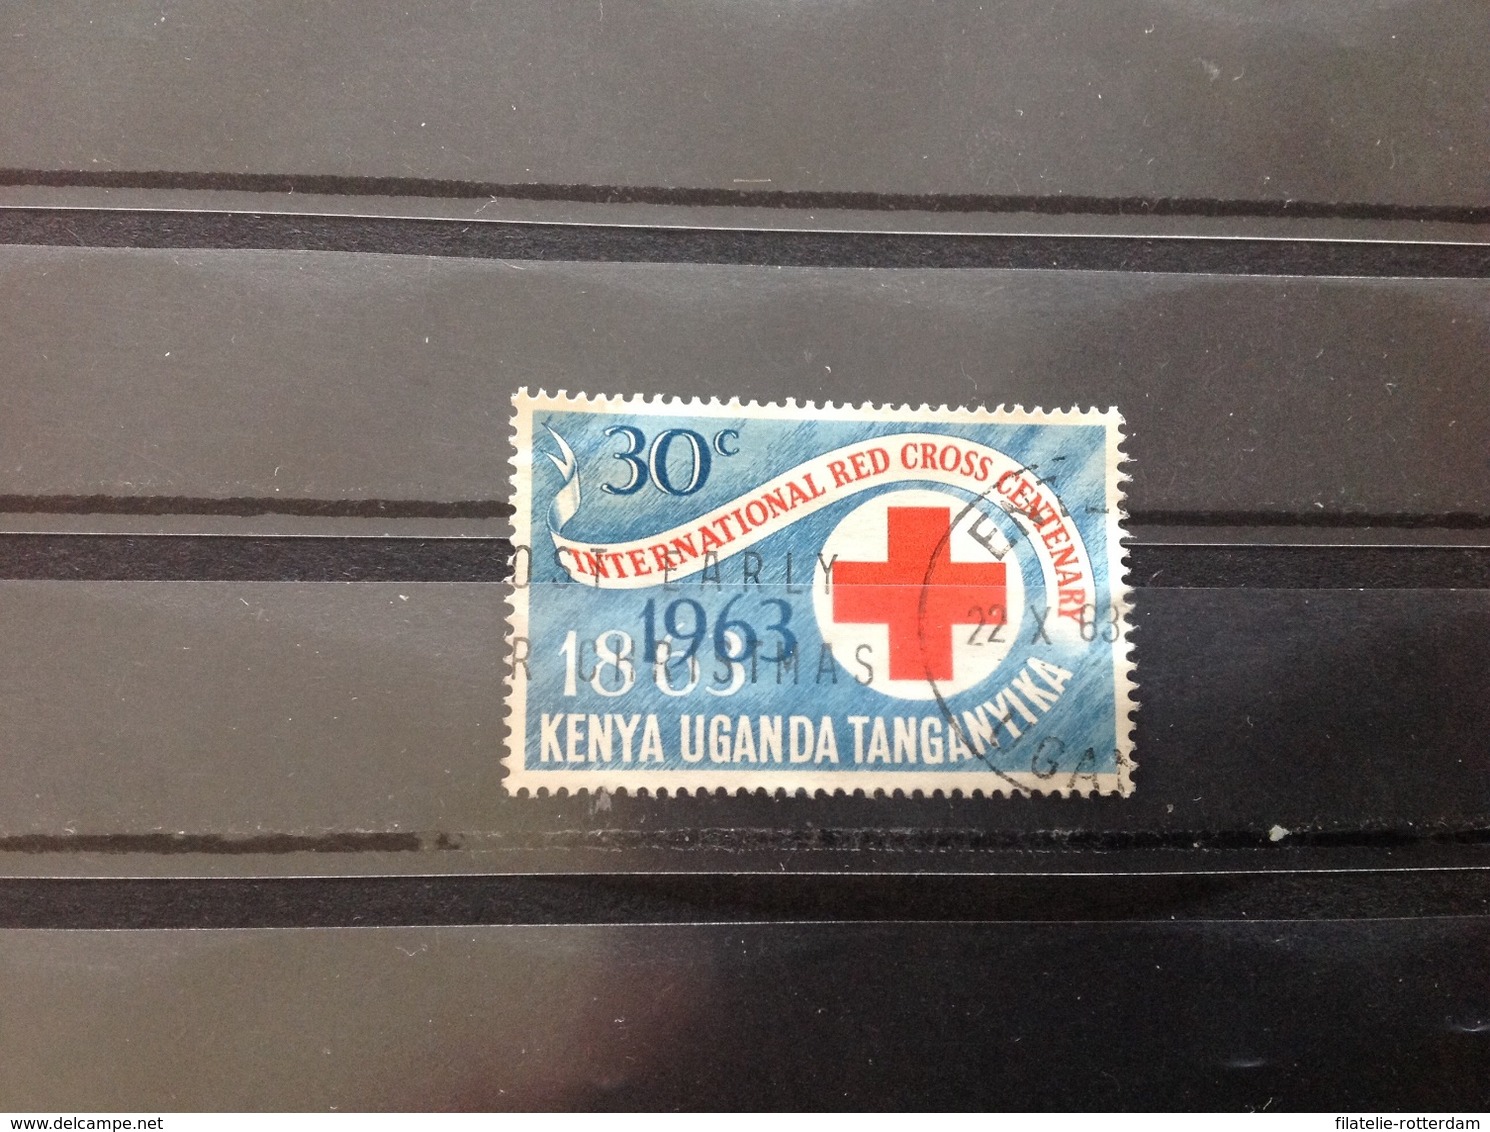 Kenia Uganda Tanganyika - 100 Jaar Rode Kruis (30) 1963 - Kenya, Oeganda & Tanganyika